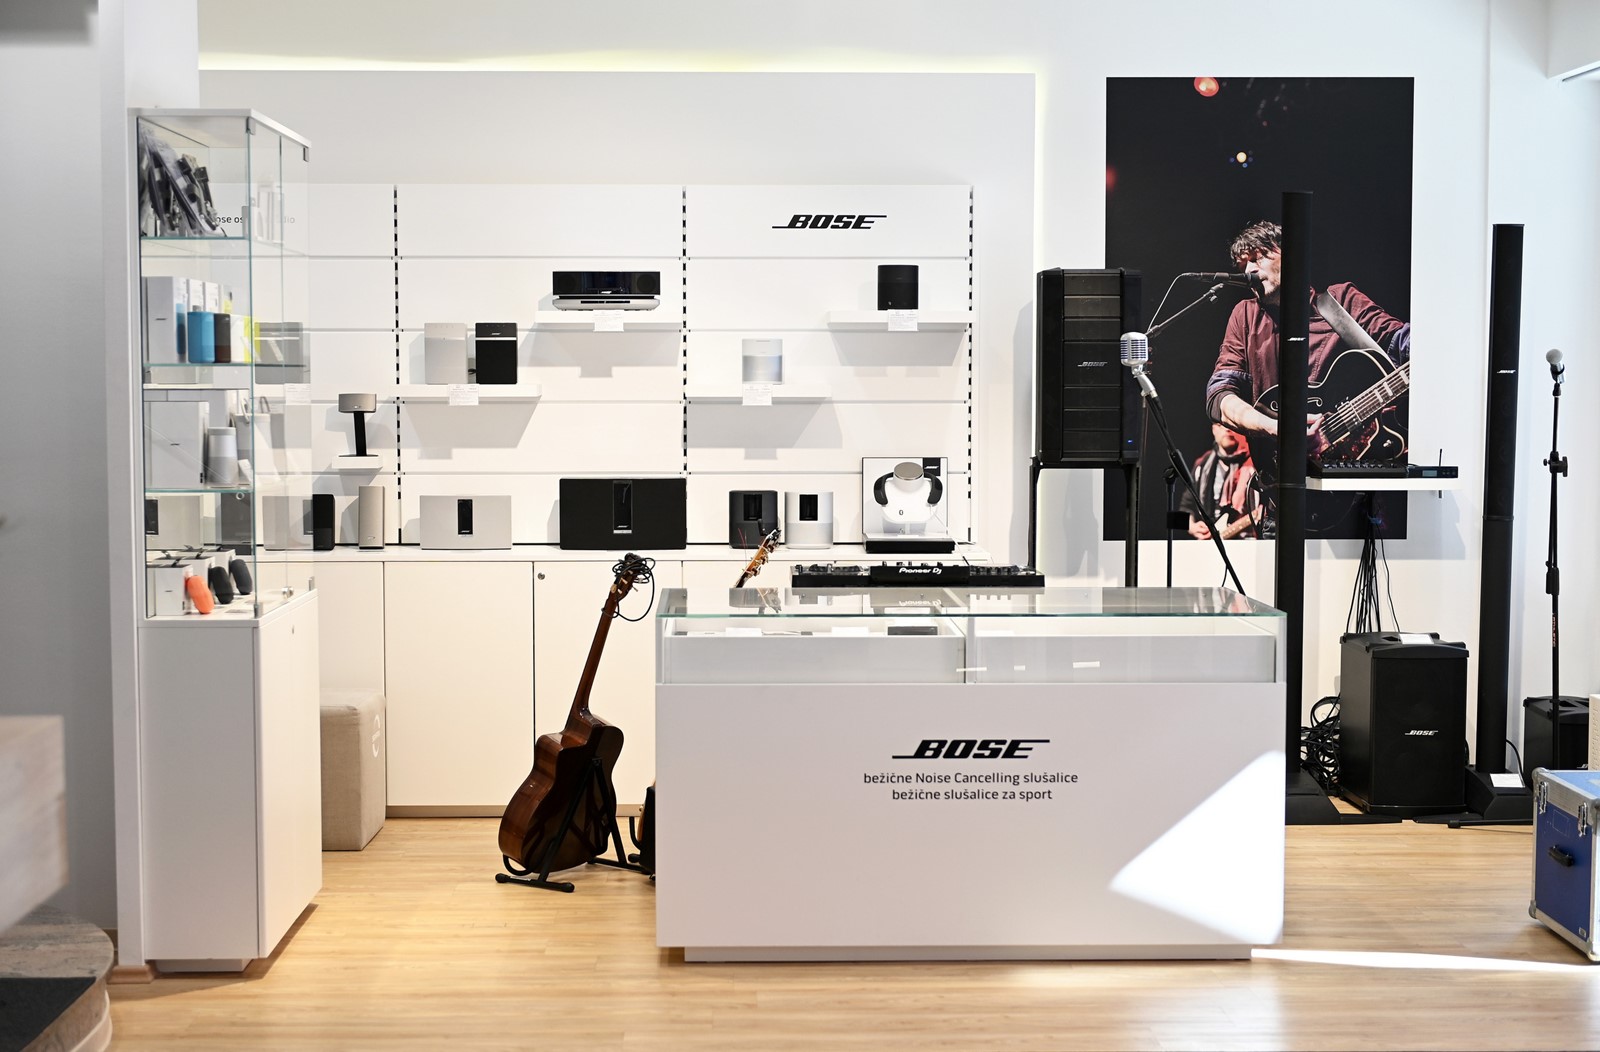 Otvoren je prvi Bose Premium Shop u Hrvatskoj - Događaji @ Bug.hr